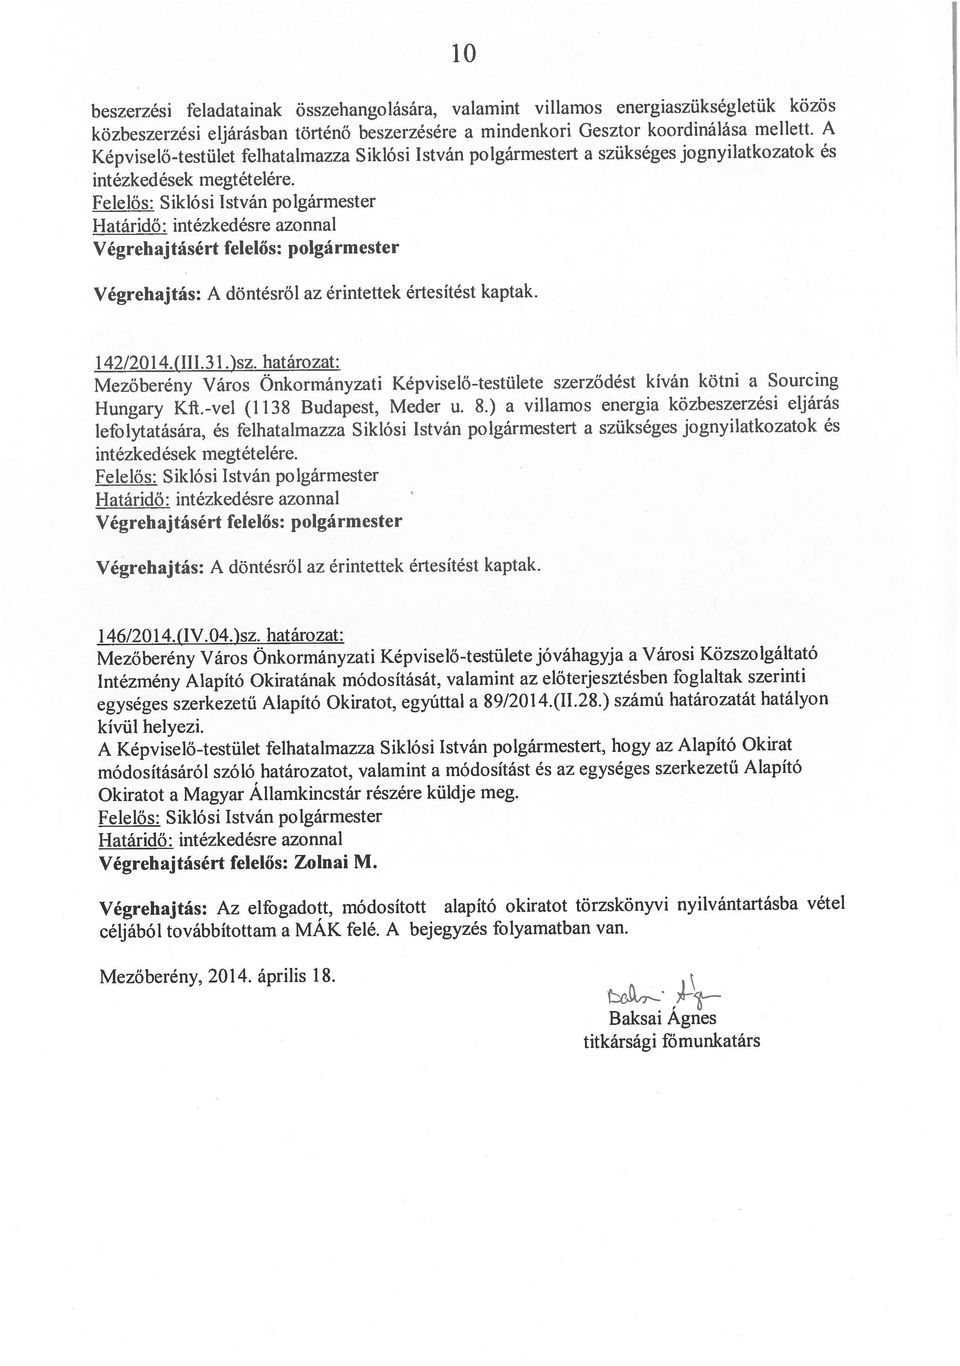 Alapító Okiratot. egyúttal a 89/2014.(1L28.) számú határozatát hatályon módosításáról szóló határozatot.